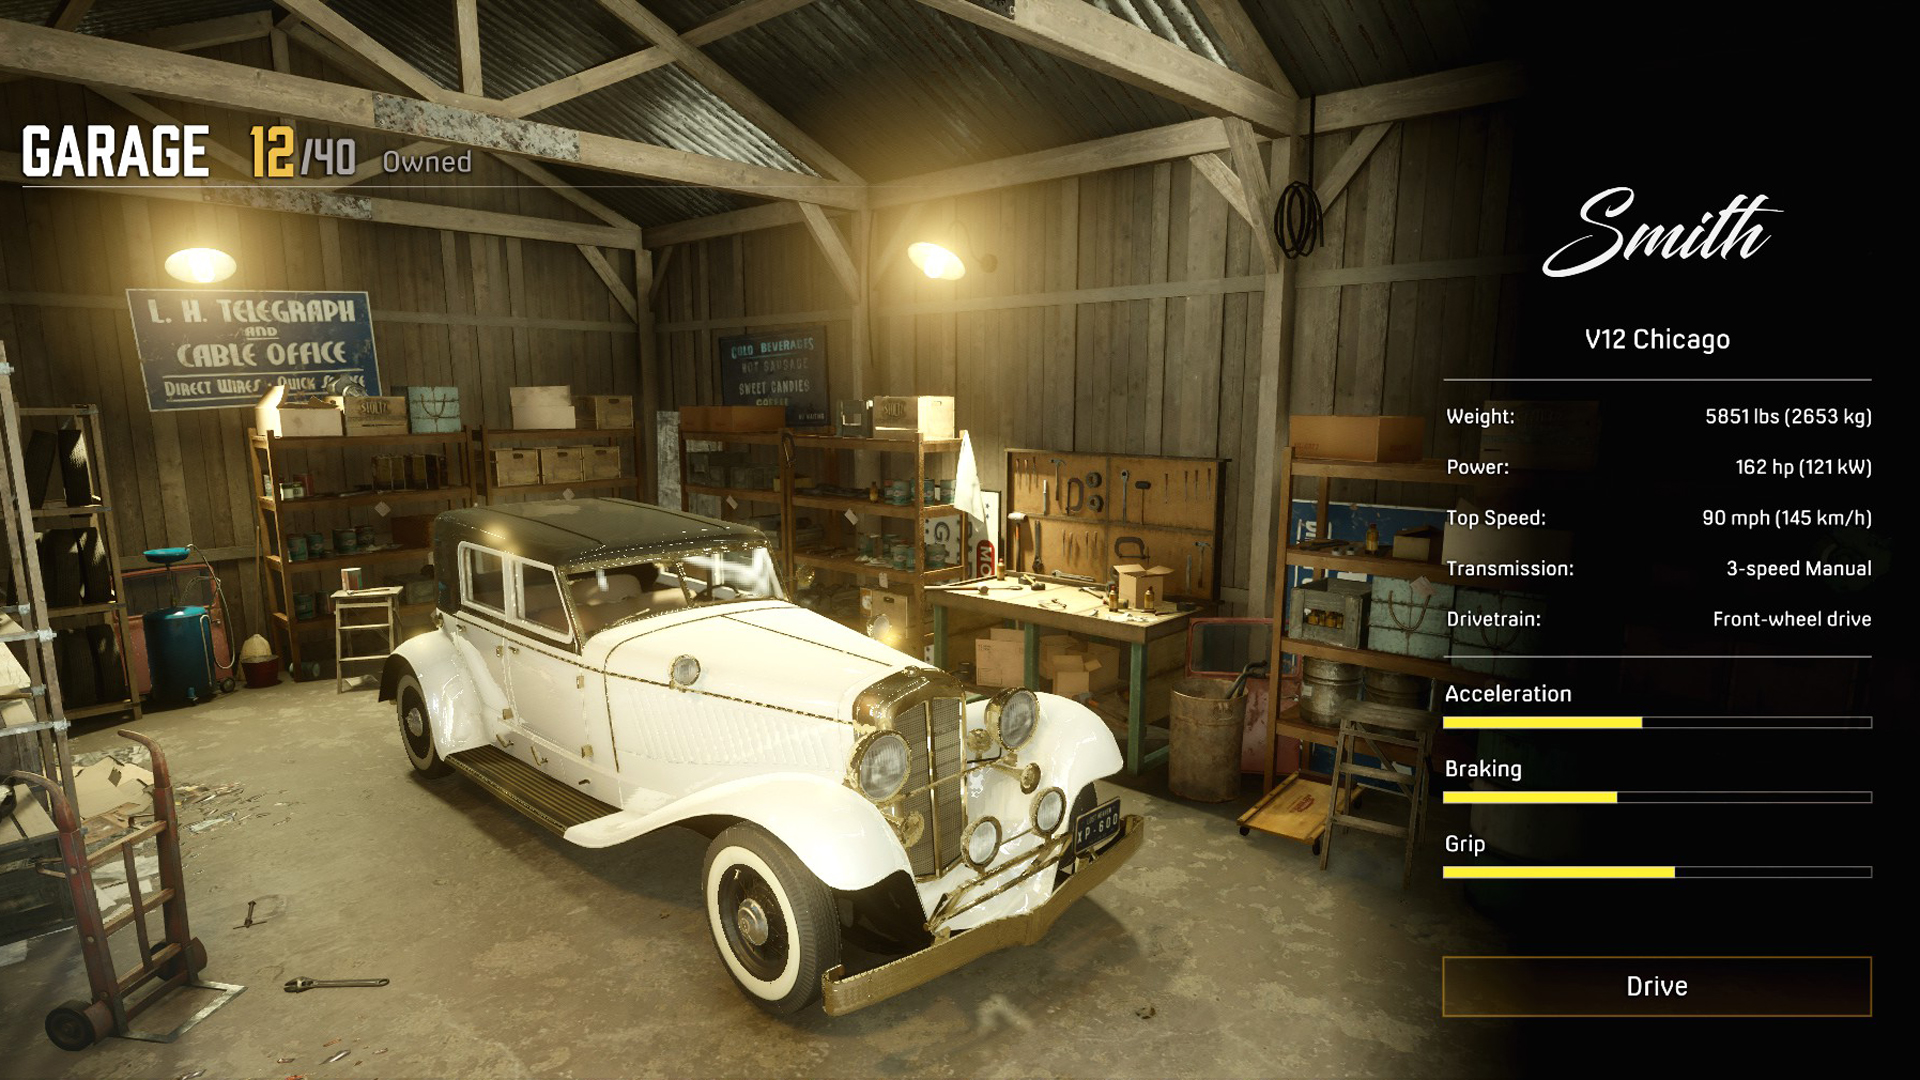 How to find a garage in Mafia 3